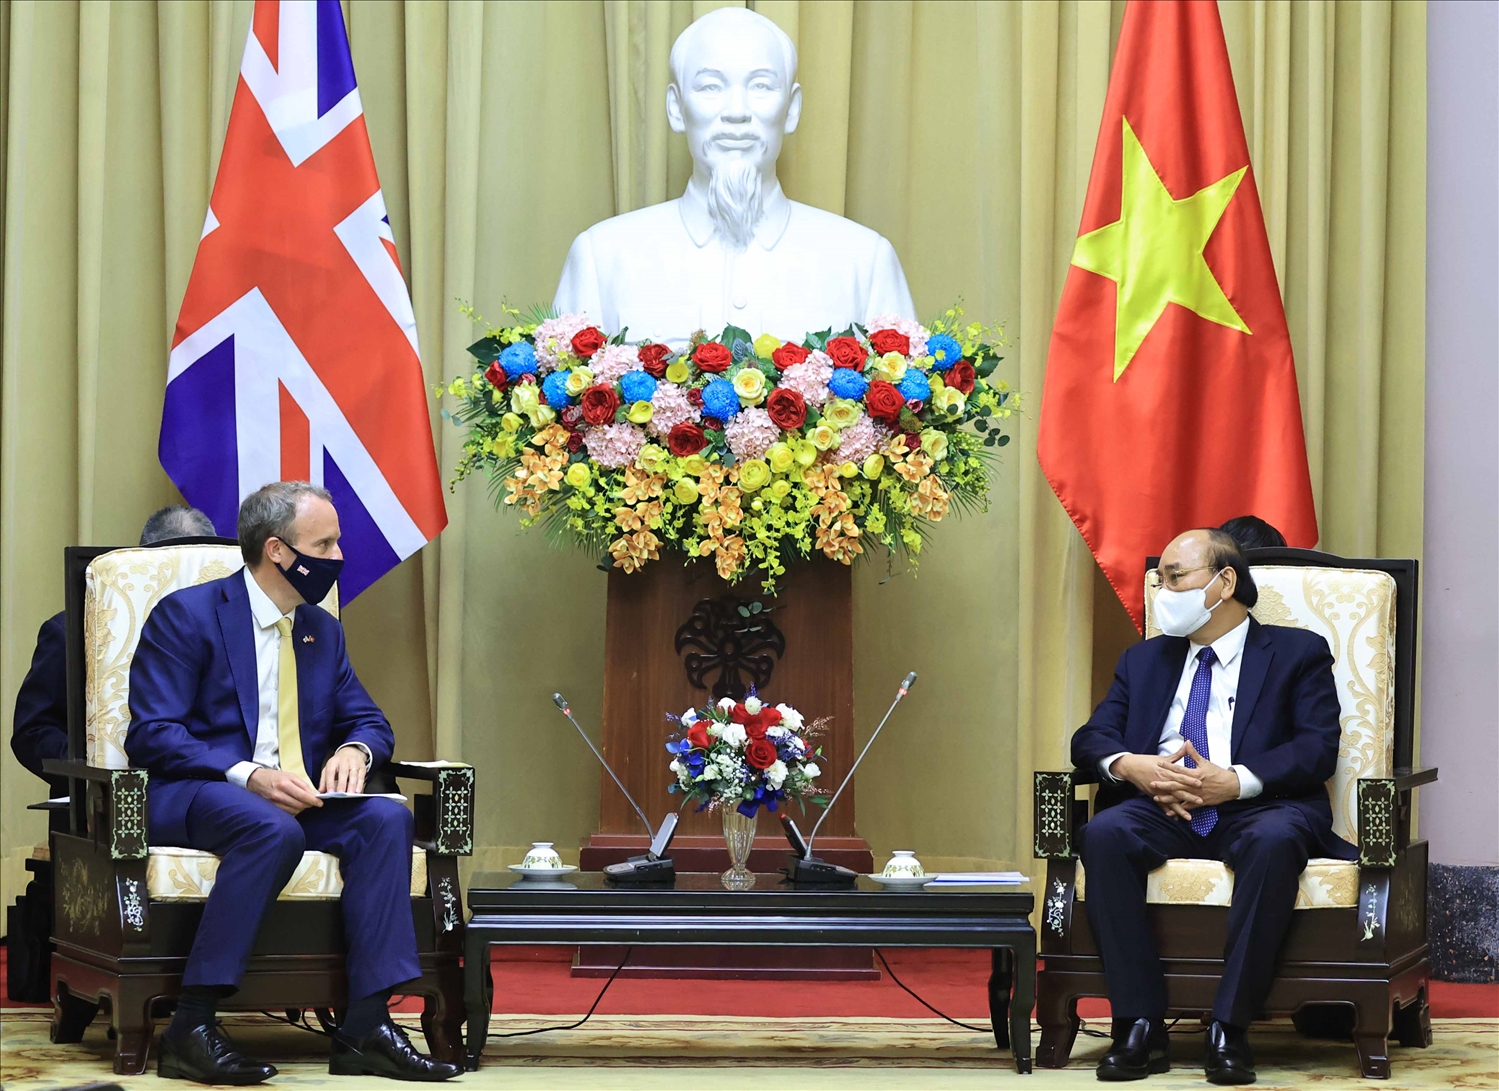 Chủ tịch nước Nguyễn Xuân Phúc tiếp Bộ trưởng thứ nhất, Bộ trưởng Bộ Ngoại giao và Phát triển Anh Dominic Raab